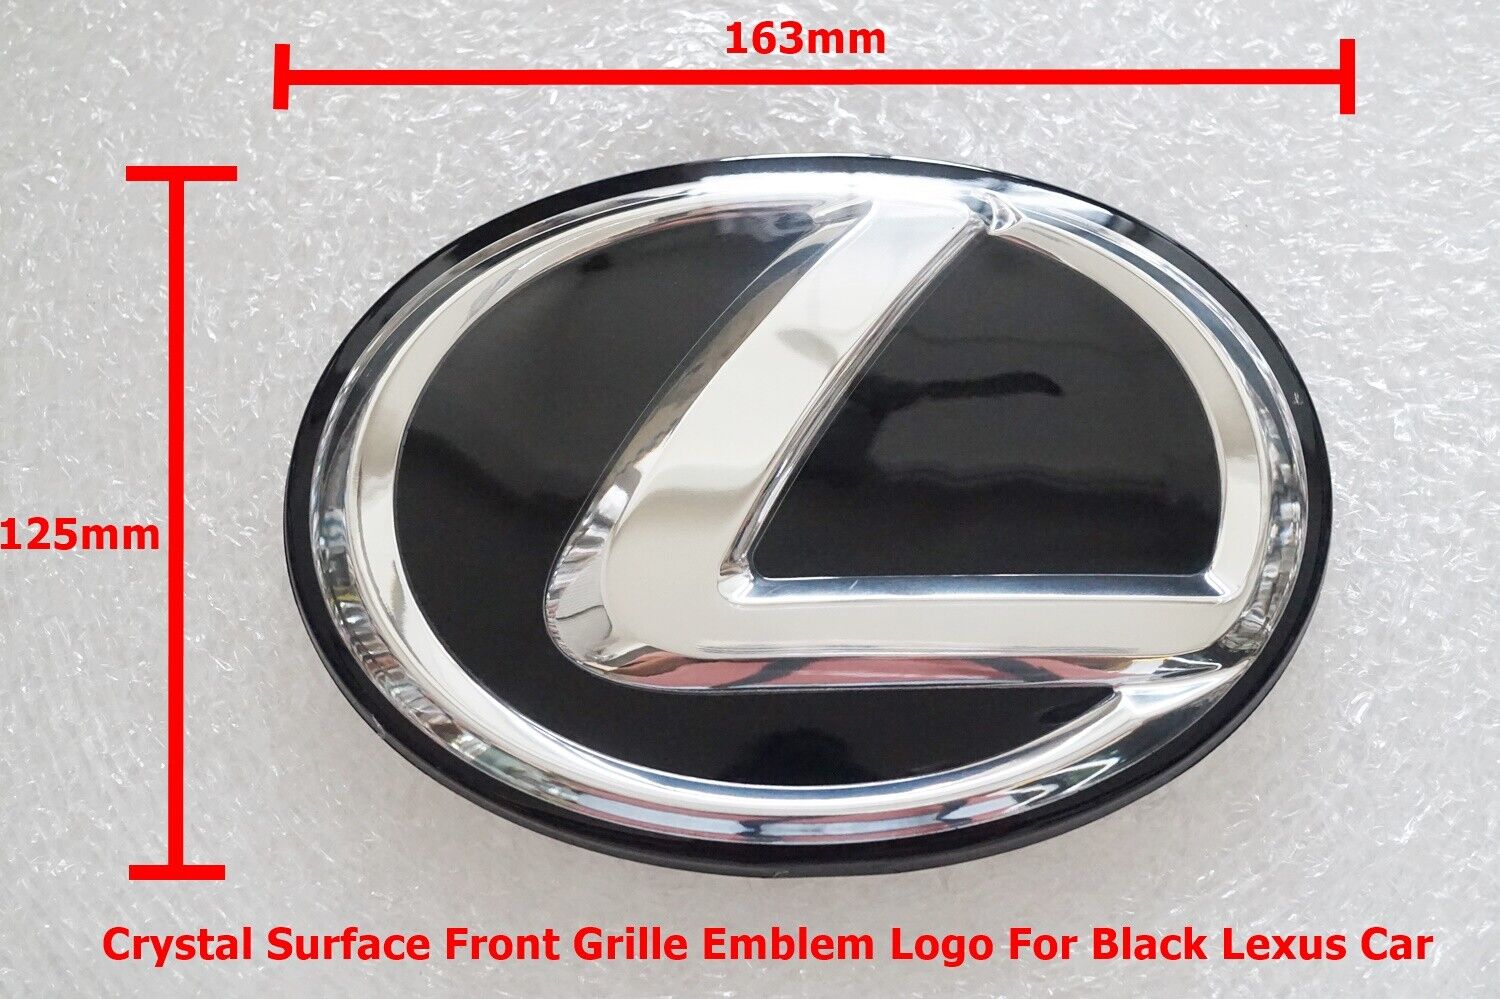 1Pc Size 163mm Crystal Surface Front Grille Emblem Logo For Black 